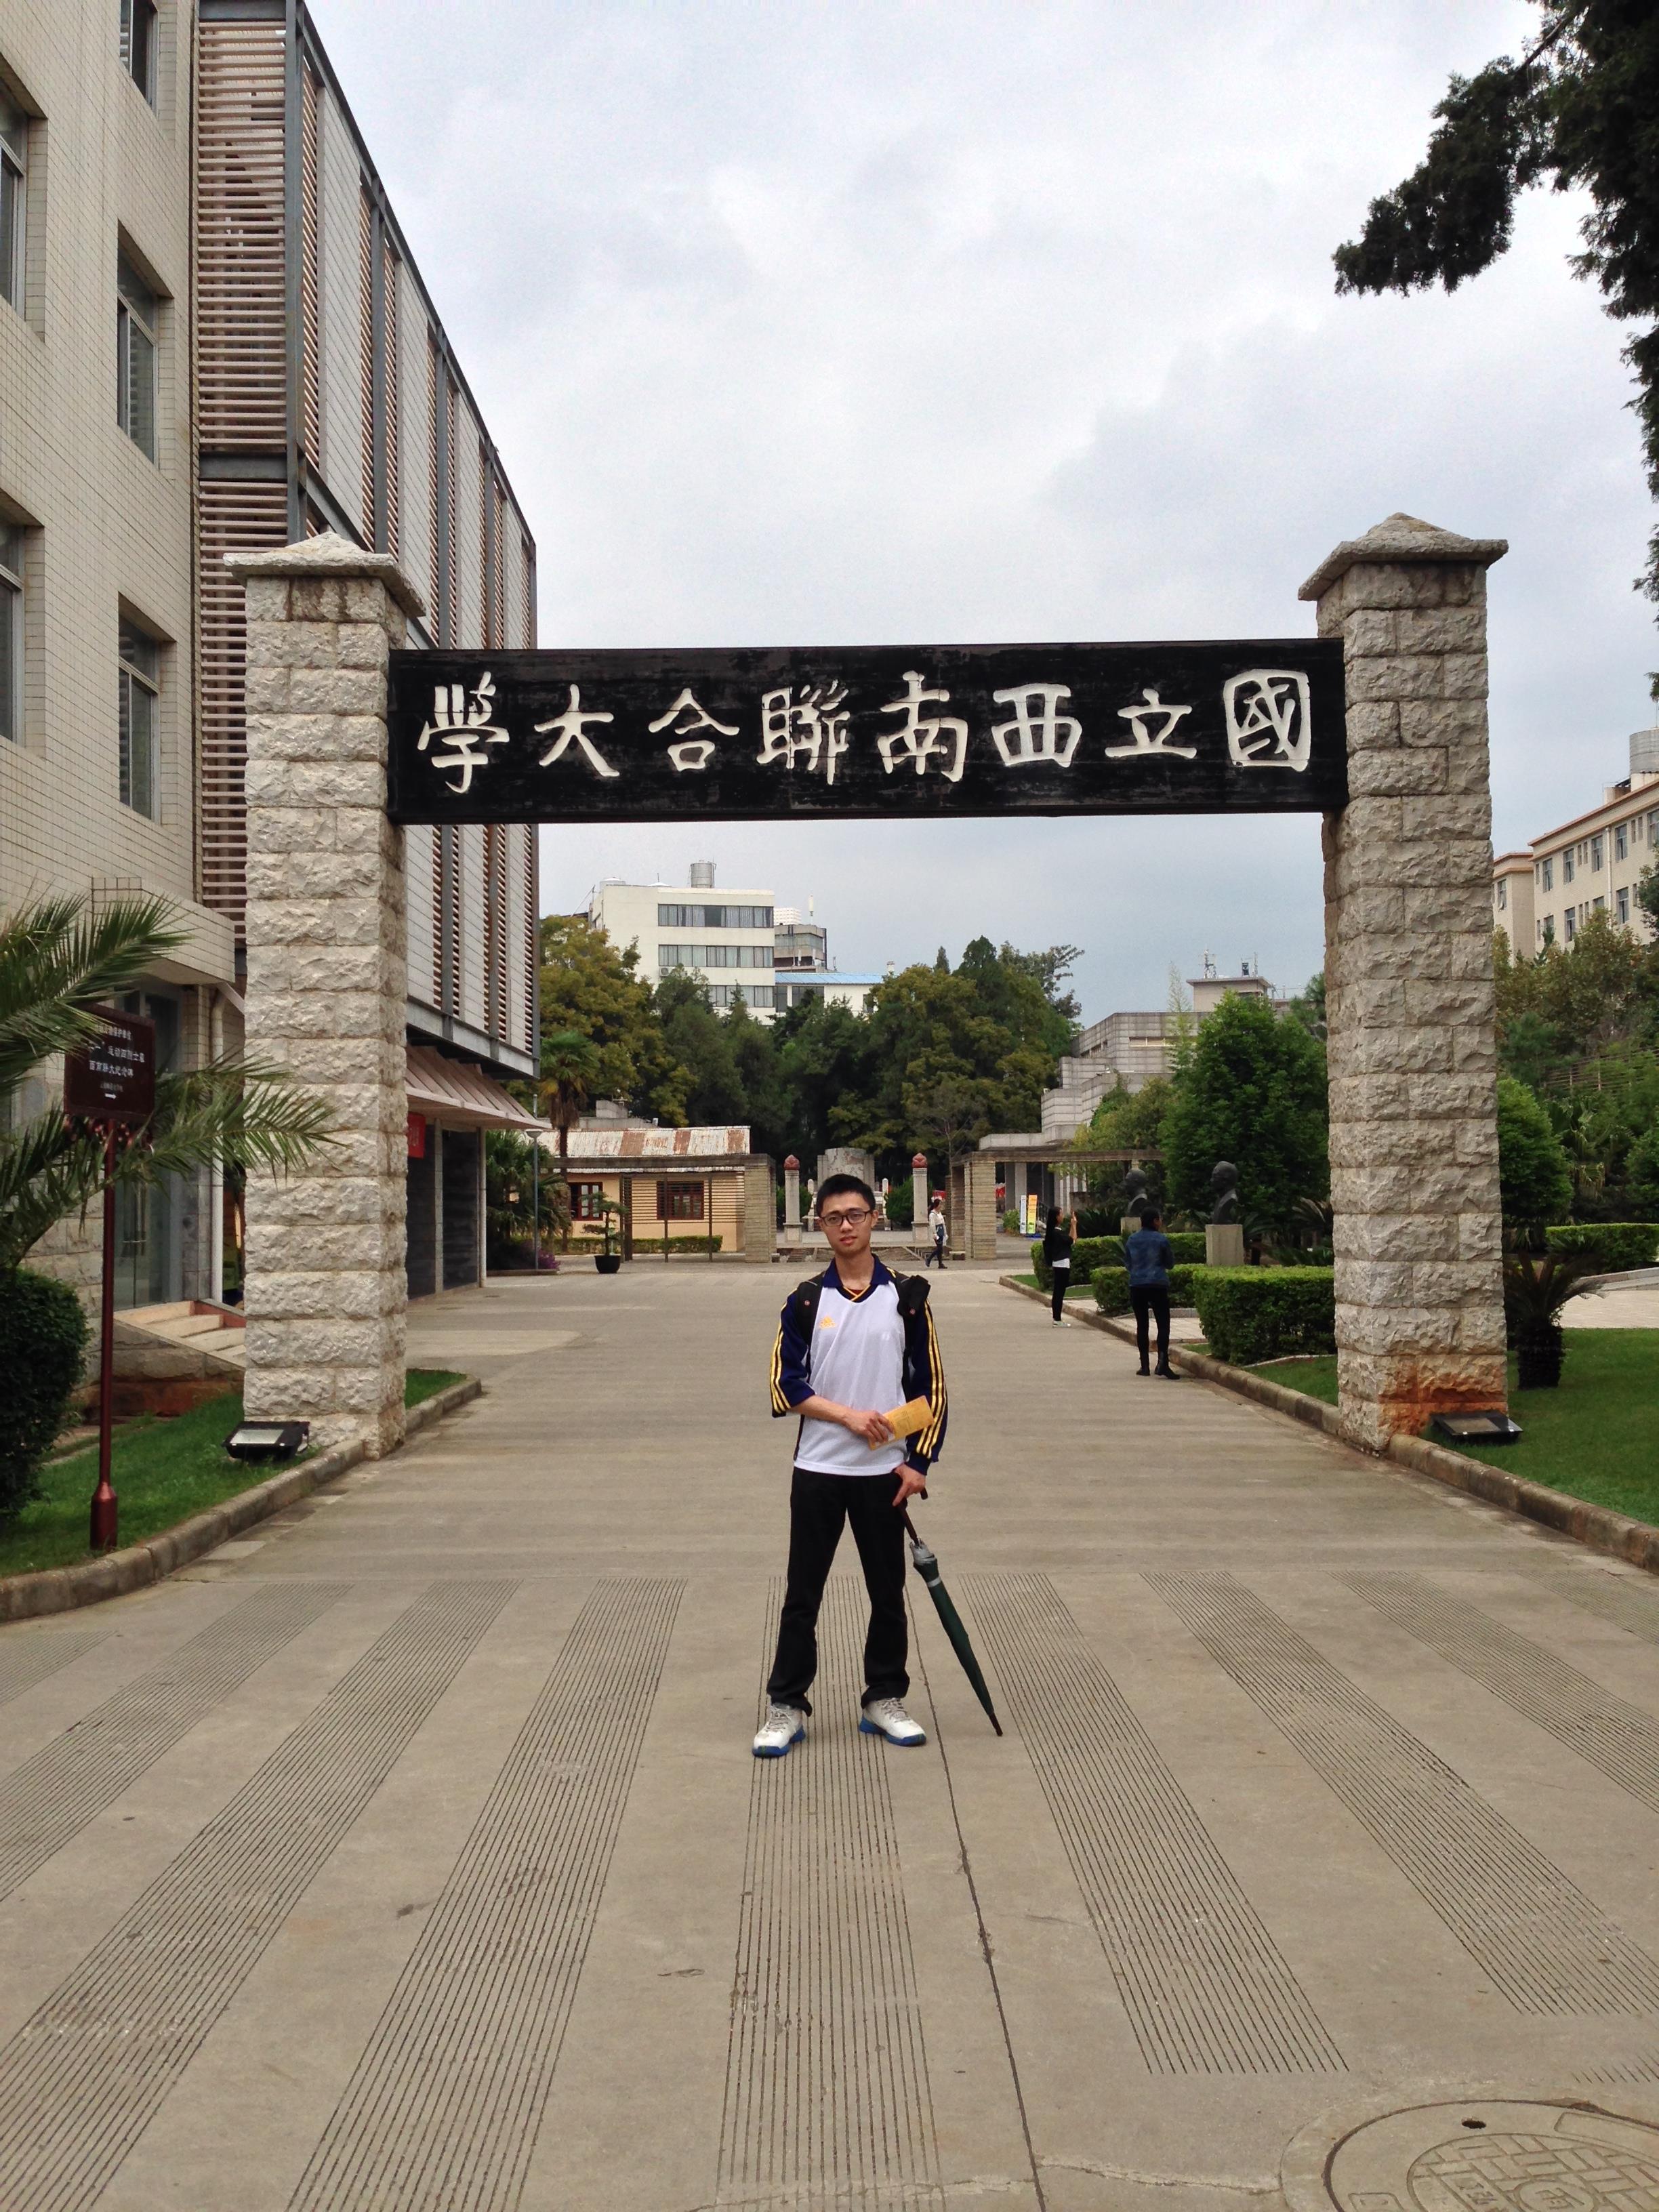 【携程攻略】昆明云南师范大学景点,现在的云南师范大学就是西南联大